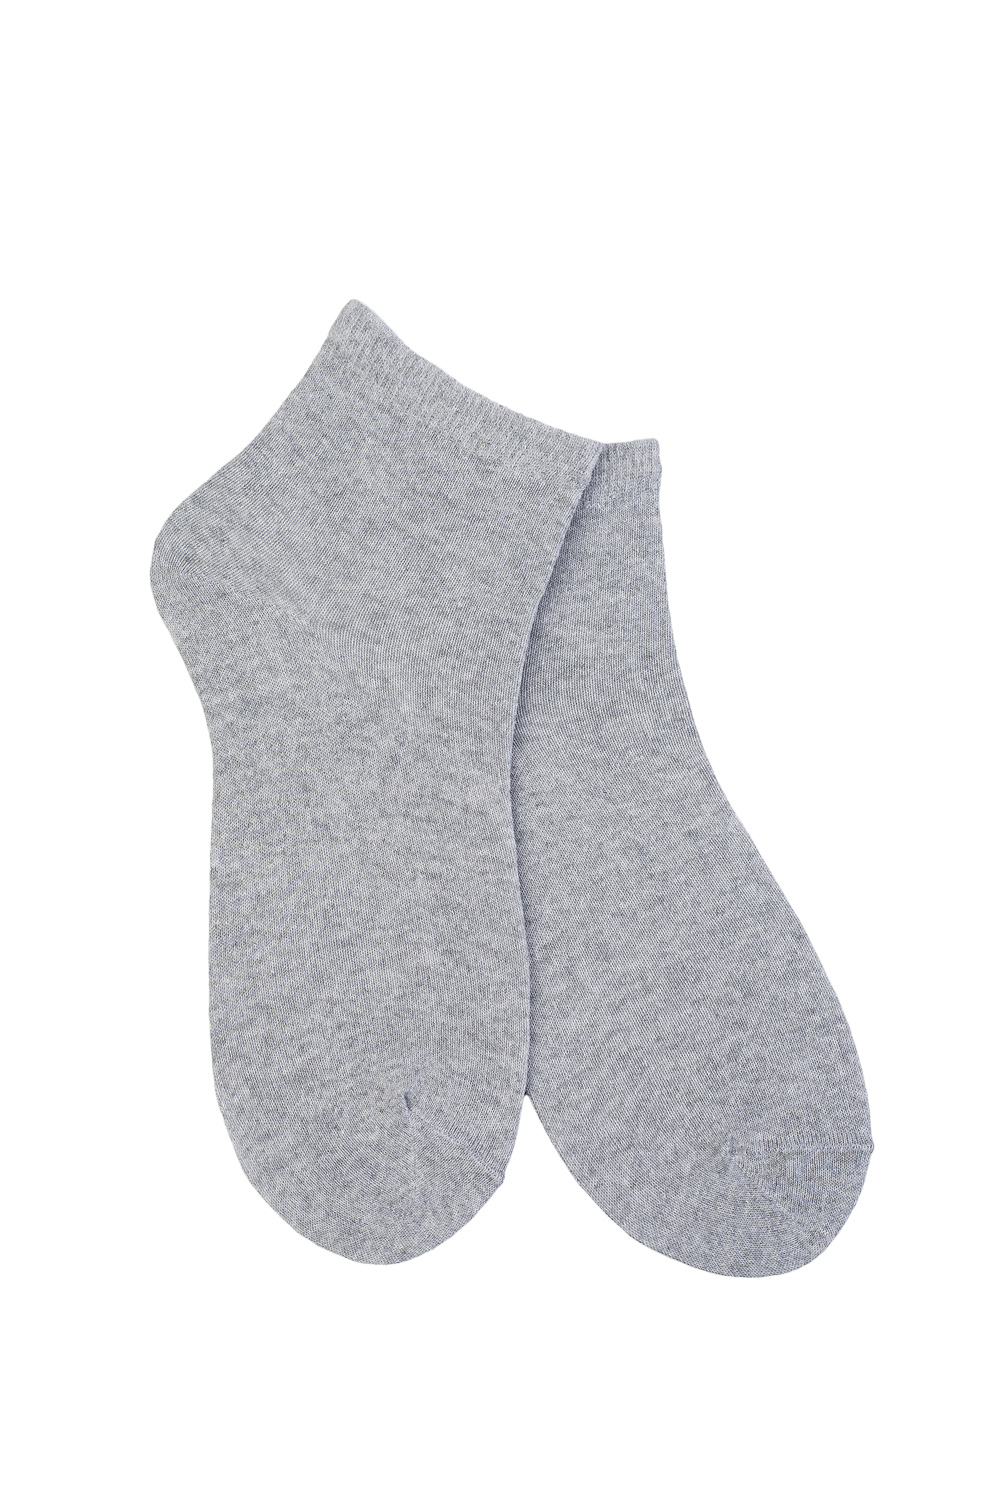 Фото товара 15133, носки женские тонкие серые